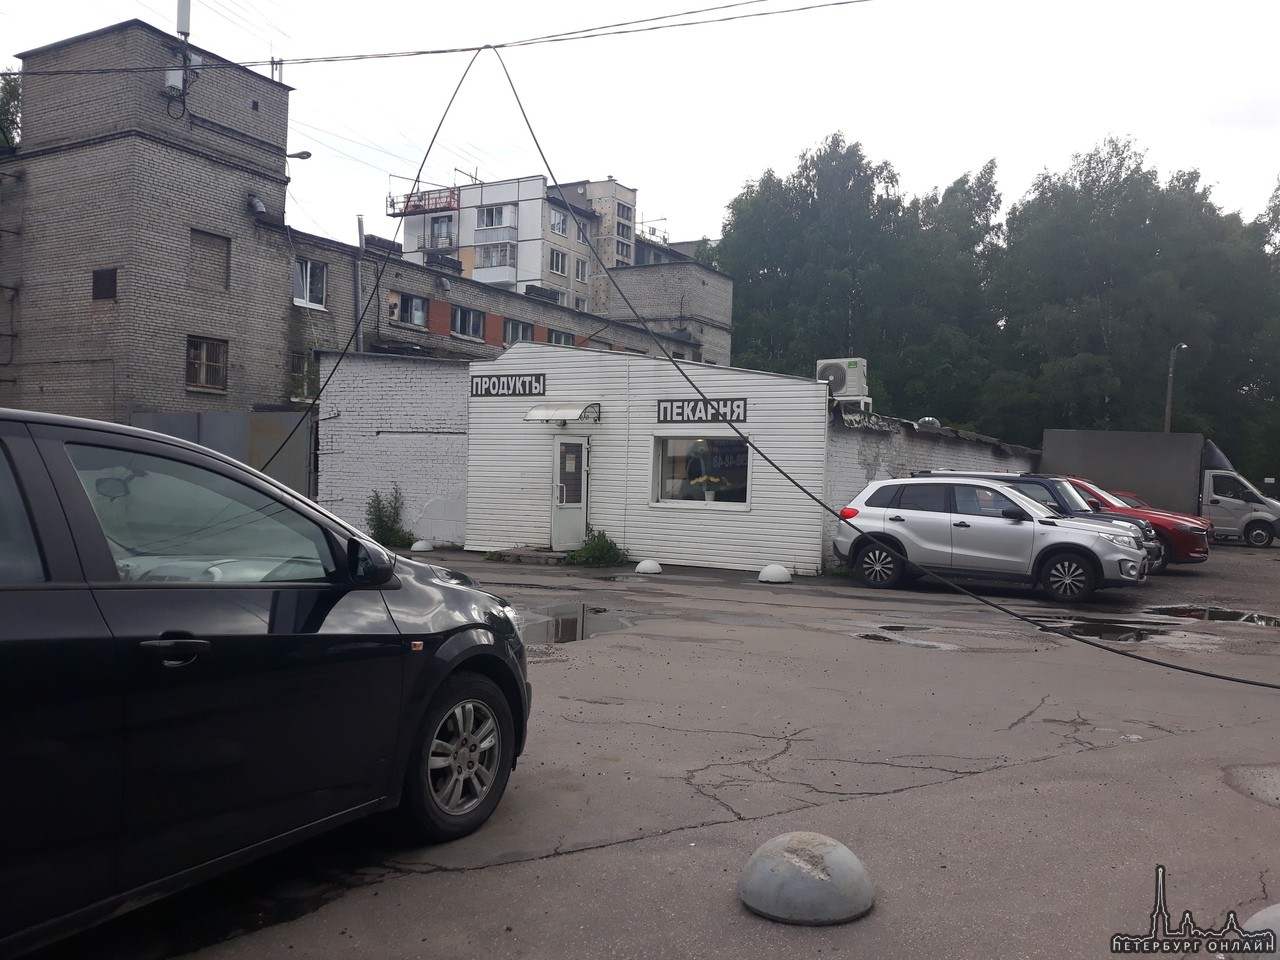 Полицейский участок на Бестужевской 59 накрыло тополем. Ко входу не подойти. Рядом оборвало провода.